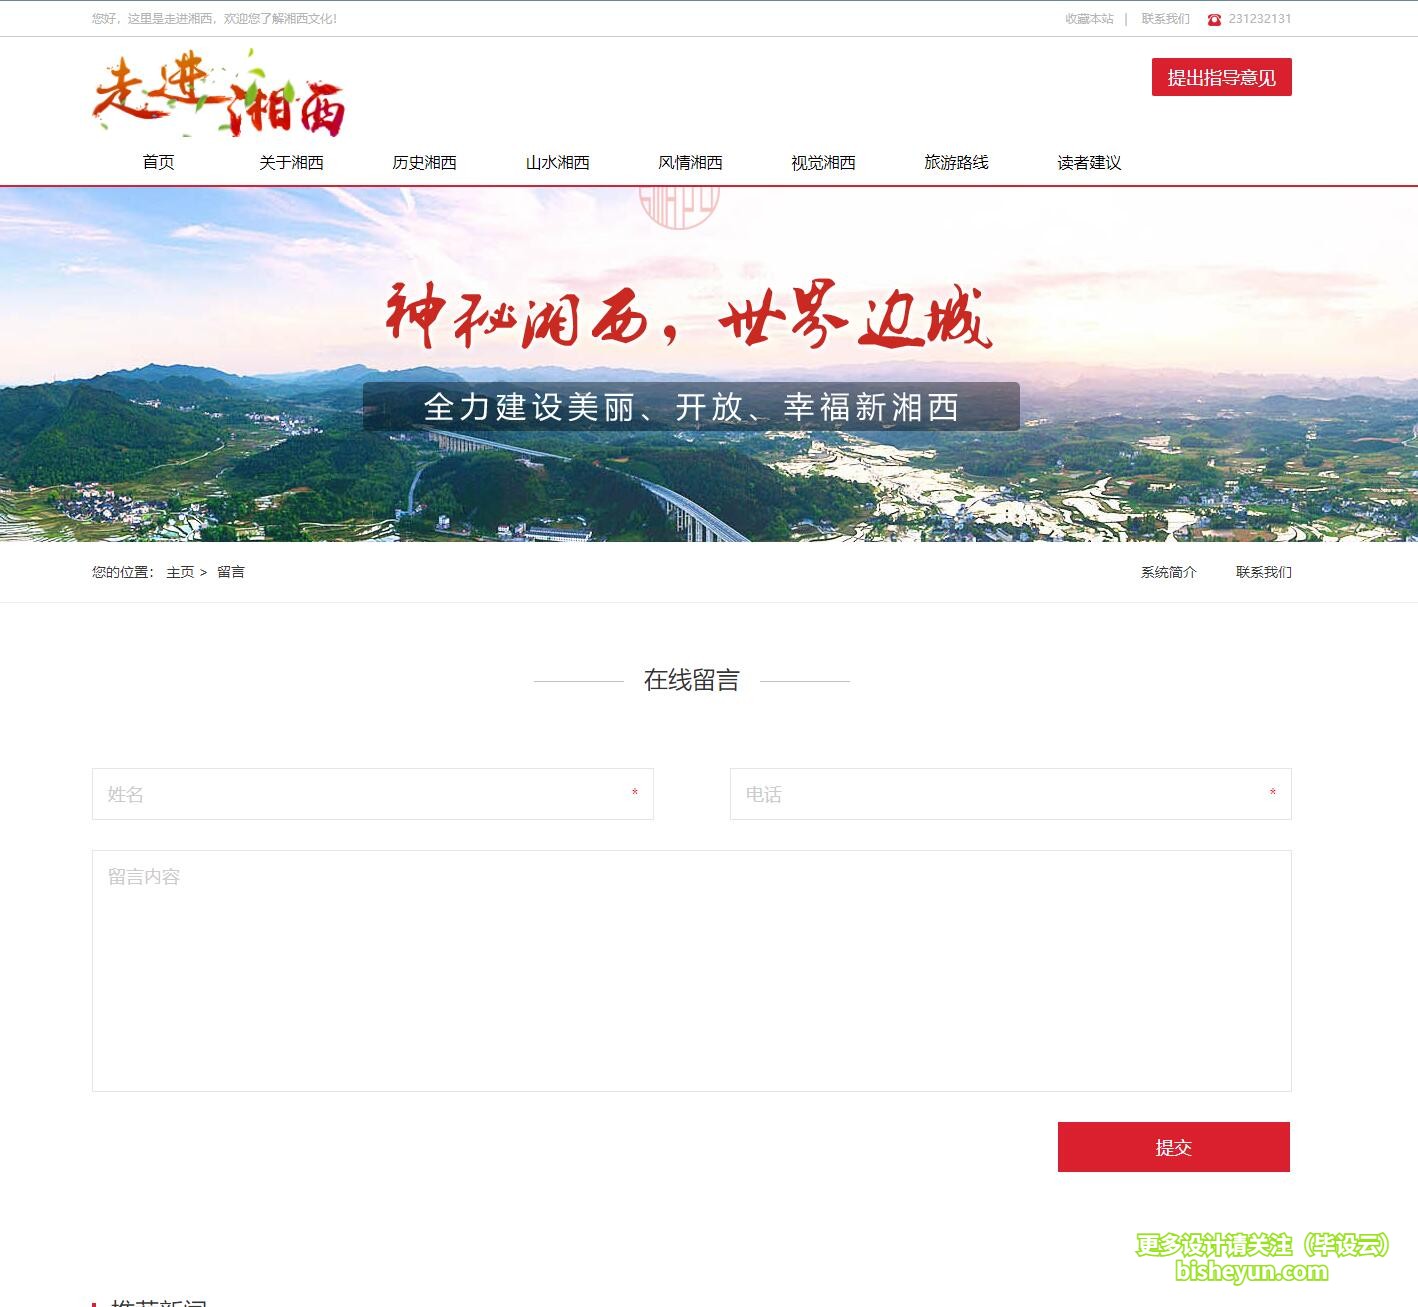 基于php湘西旅游网站管理系统-用户在线留言